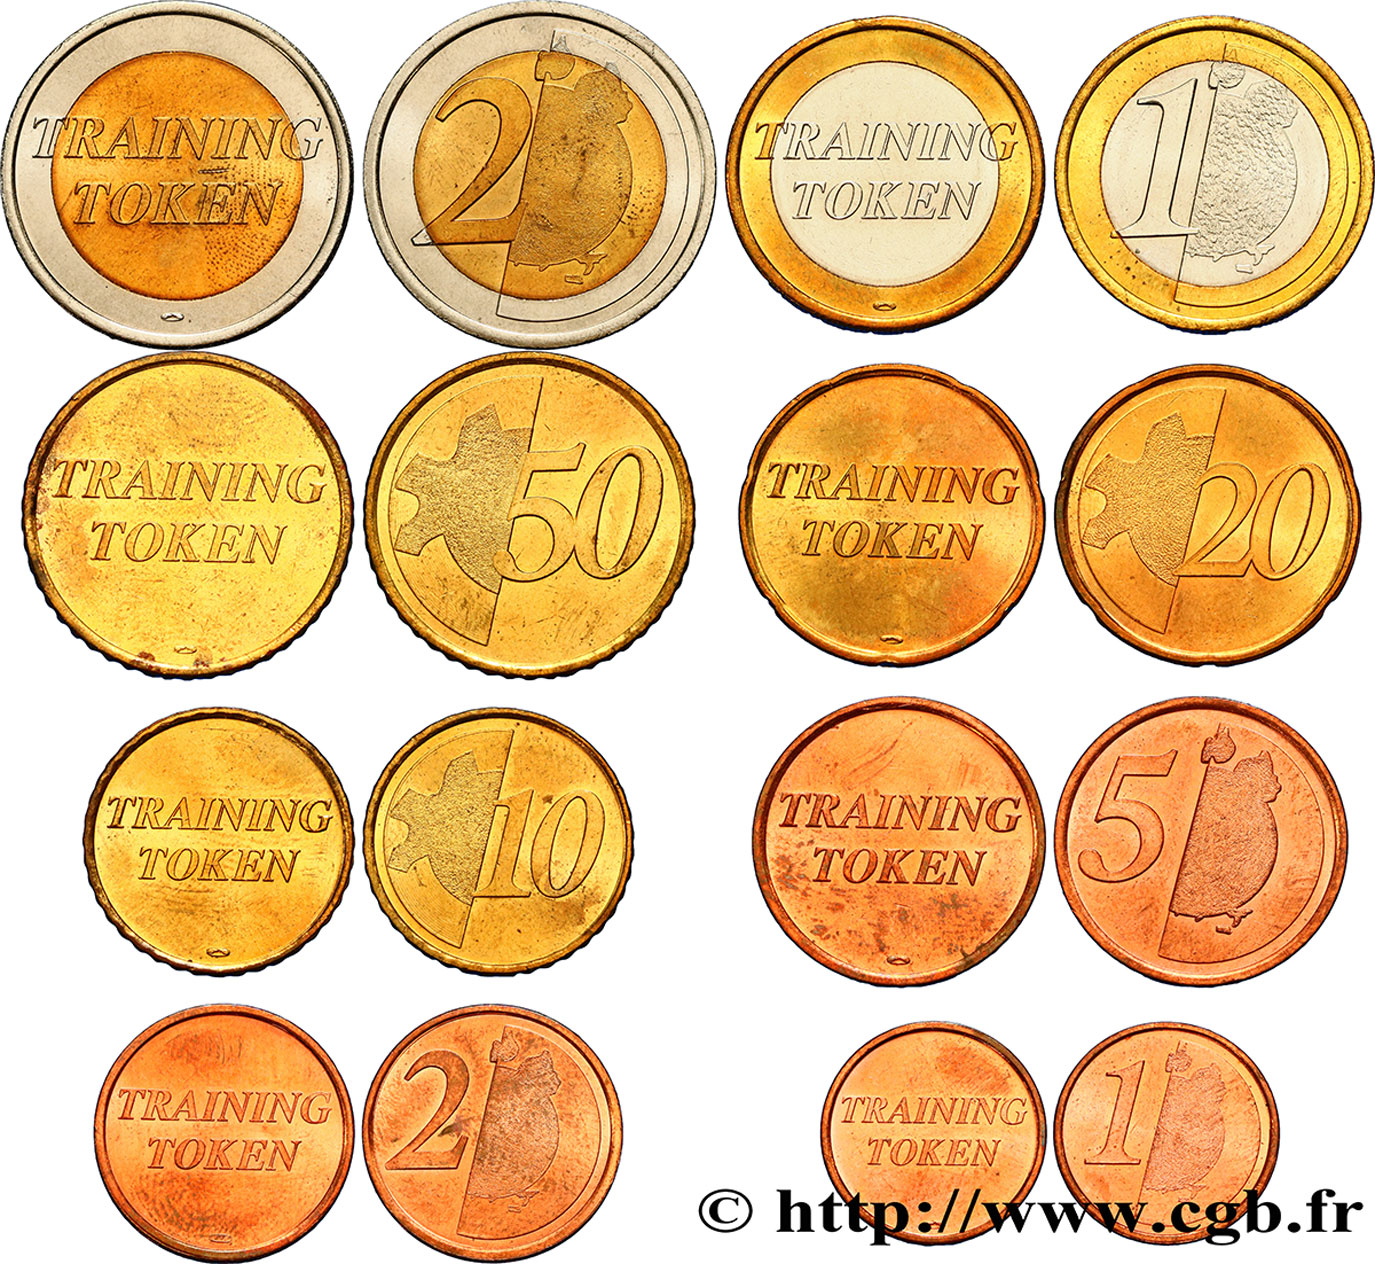 EUROPEAN CENTRAL BANK Série complète Training tokens - 1 cent à 2 Euro n.d. MS63